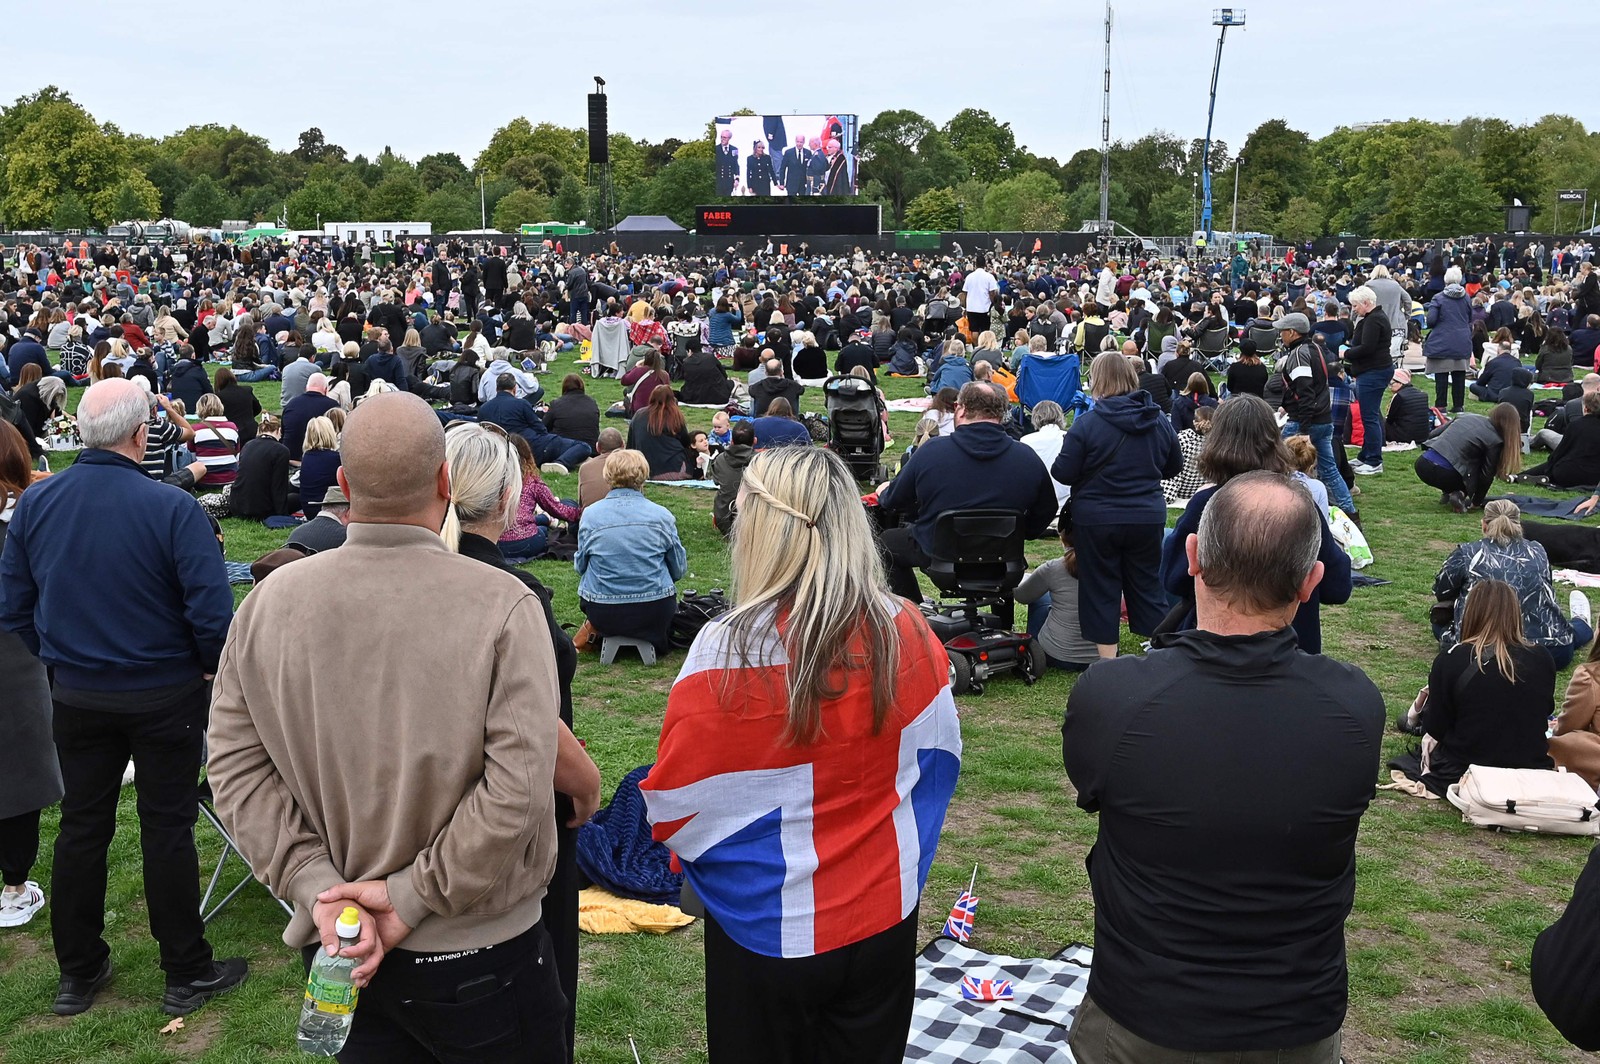 Público assiste ao Funeral de Estado da Rainha Elizabeth II em um telão em Hyde Park, Londres — Foto: JUSTIN TALLIS / AFP